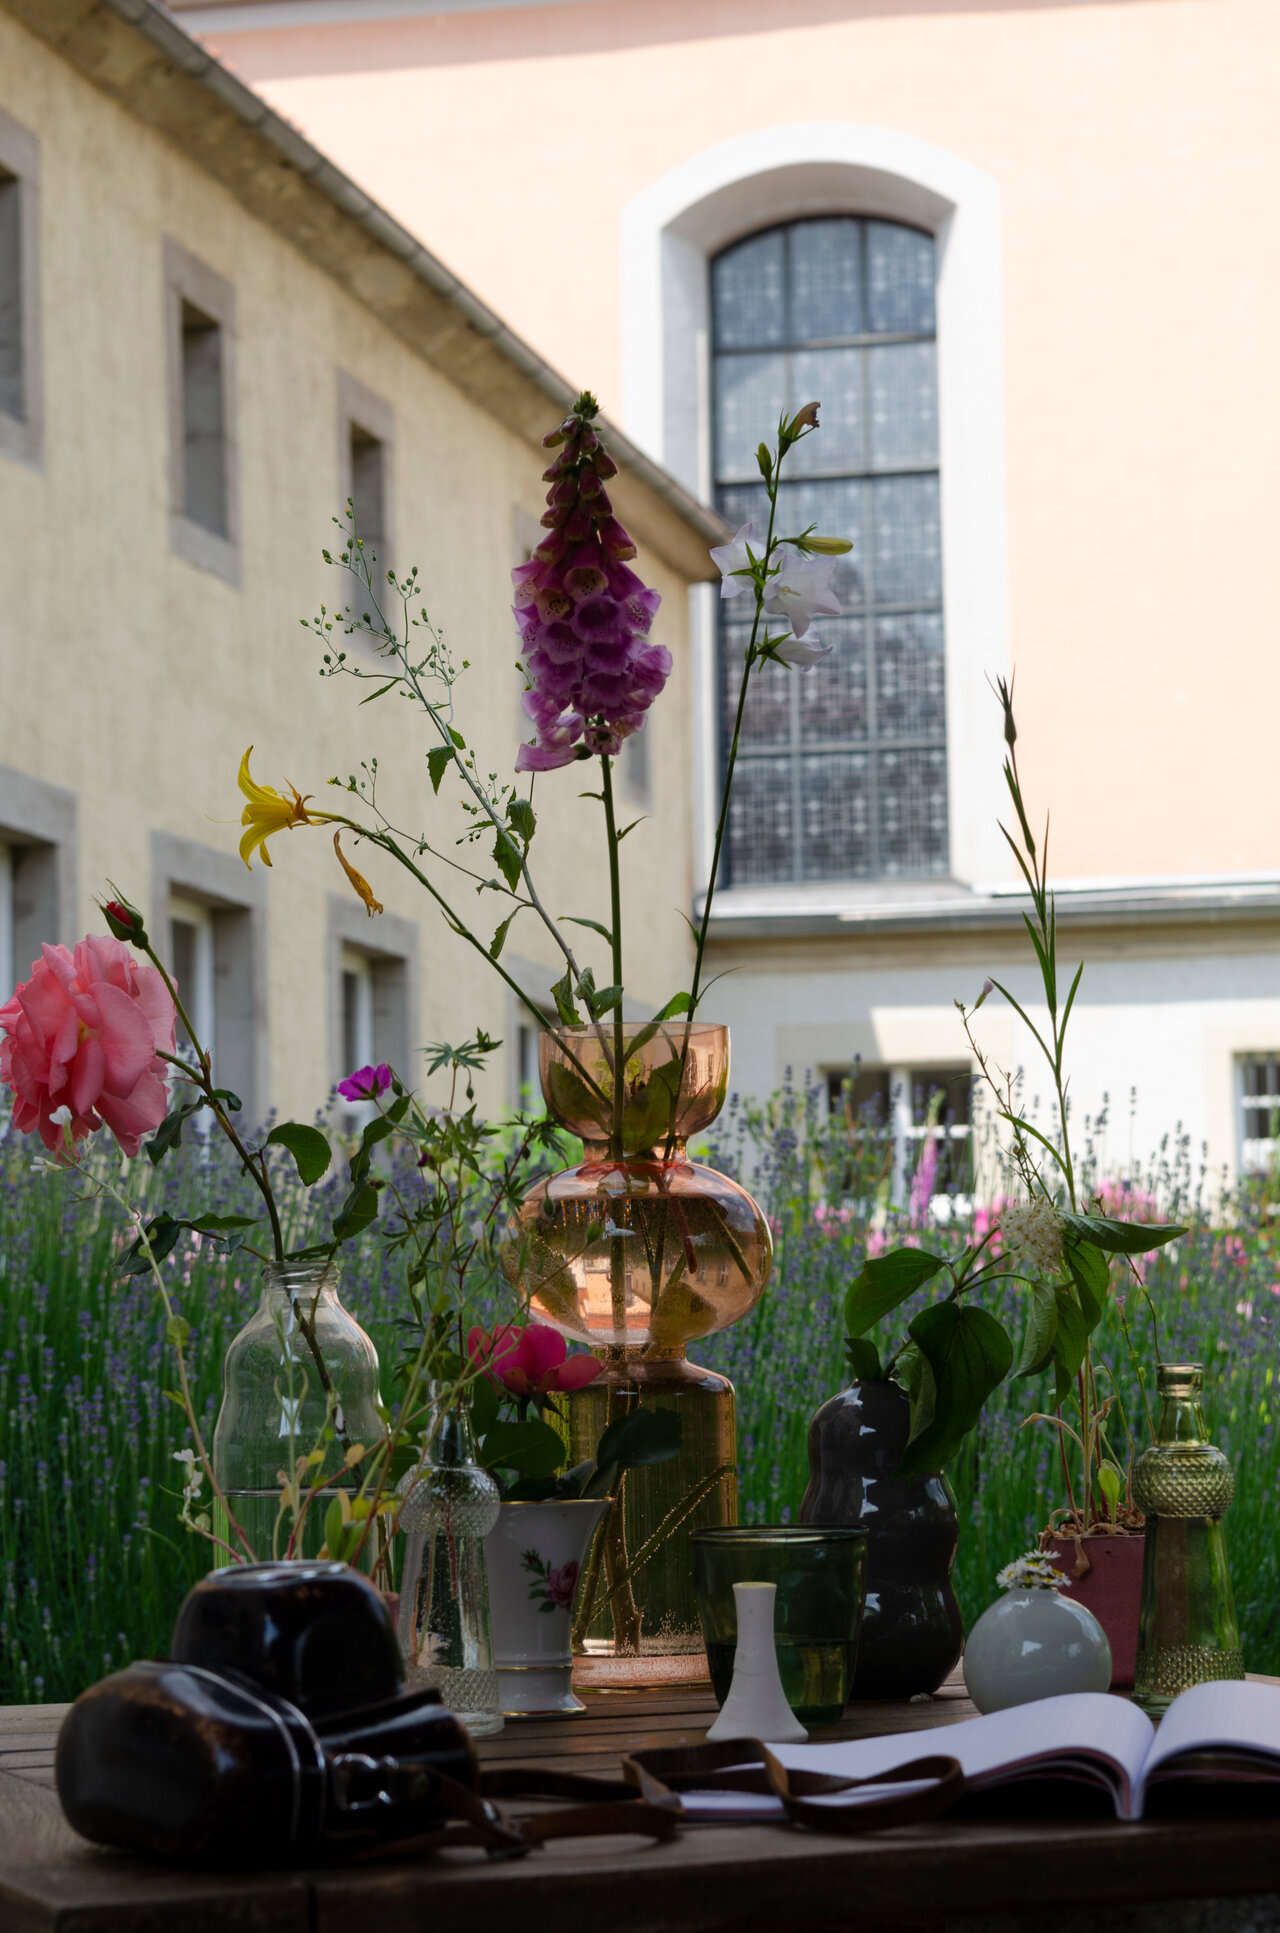 LÜCHTENHOF - Hofgarten - Stilleben von Blumen in Vasen, Fotoapparat und aufgeschlagenem Buch vor Kirche